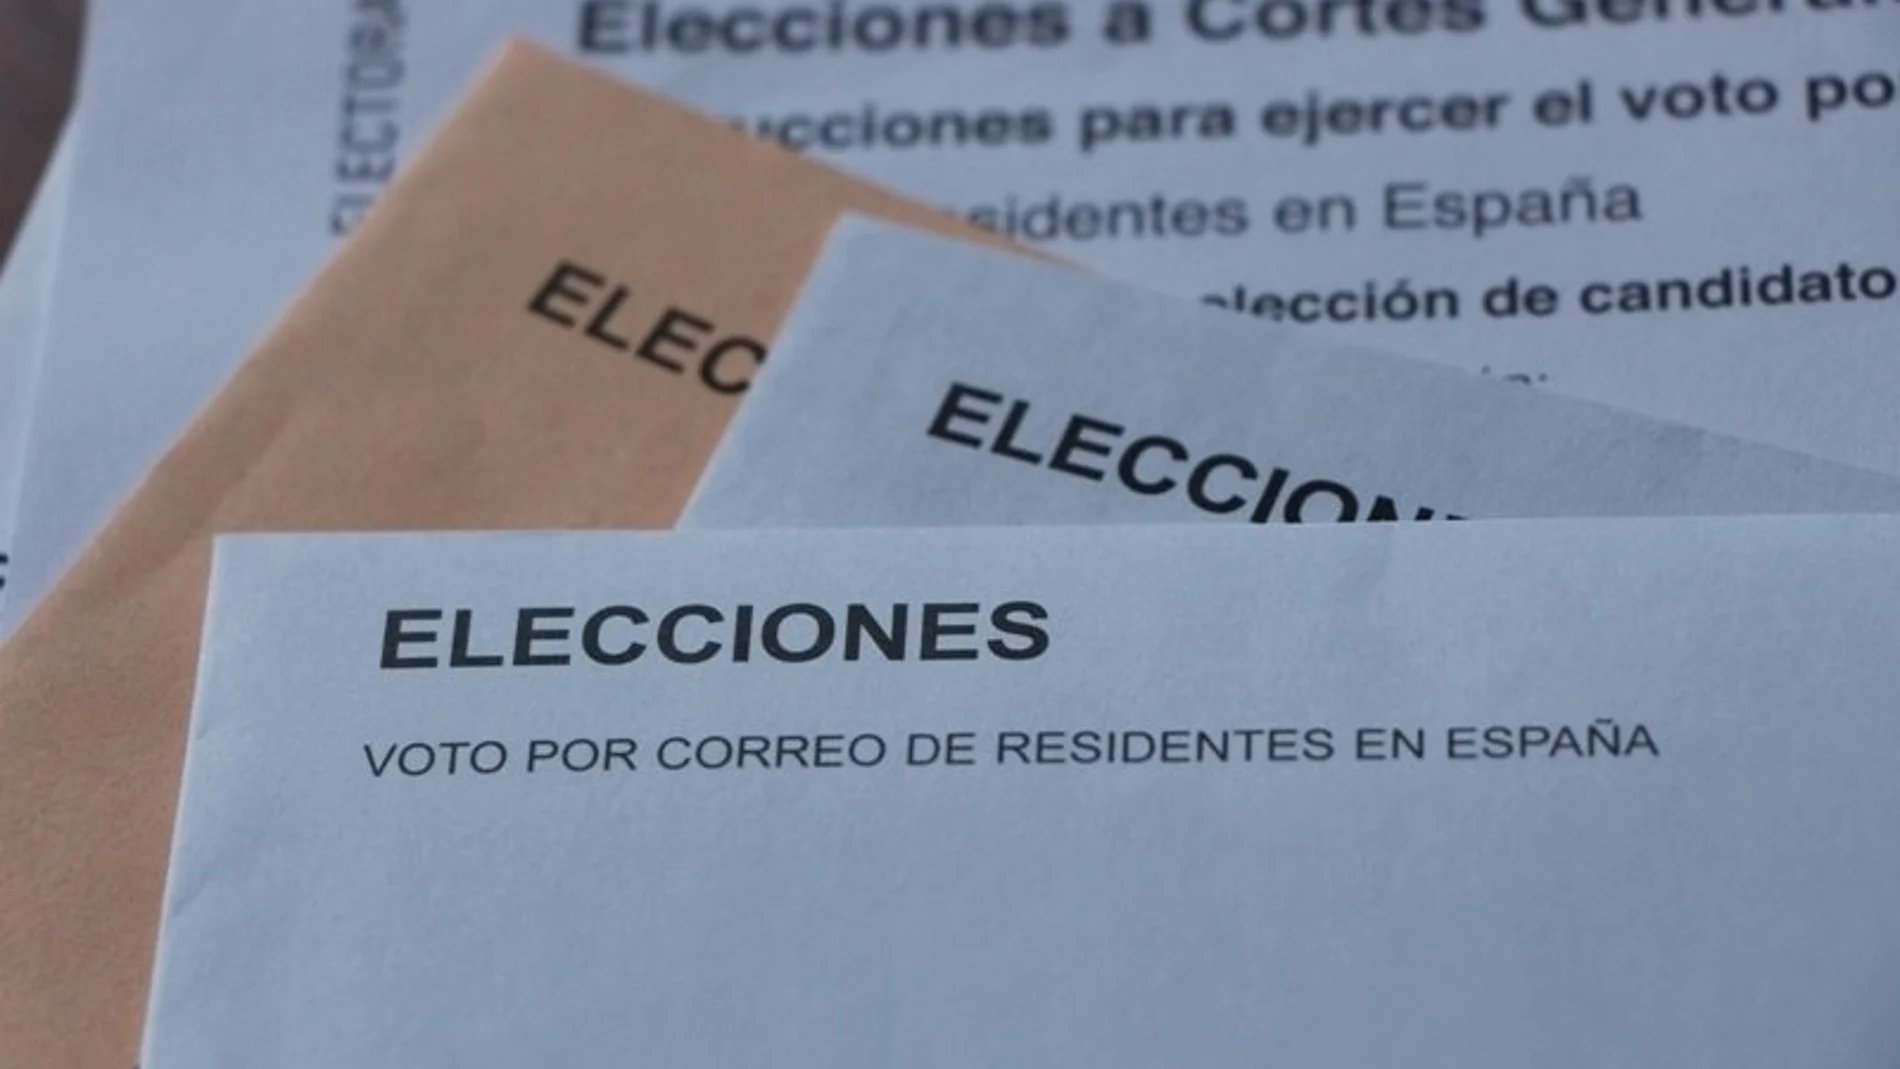 La Junta Electoral amplia hasta el viernes el plazo para votar por correo